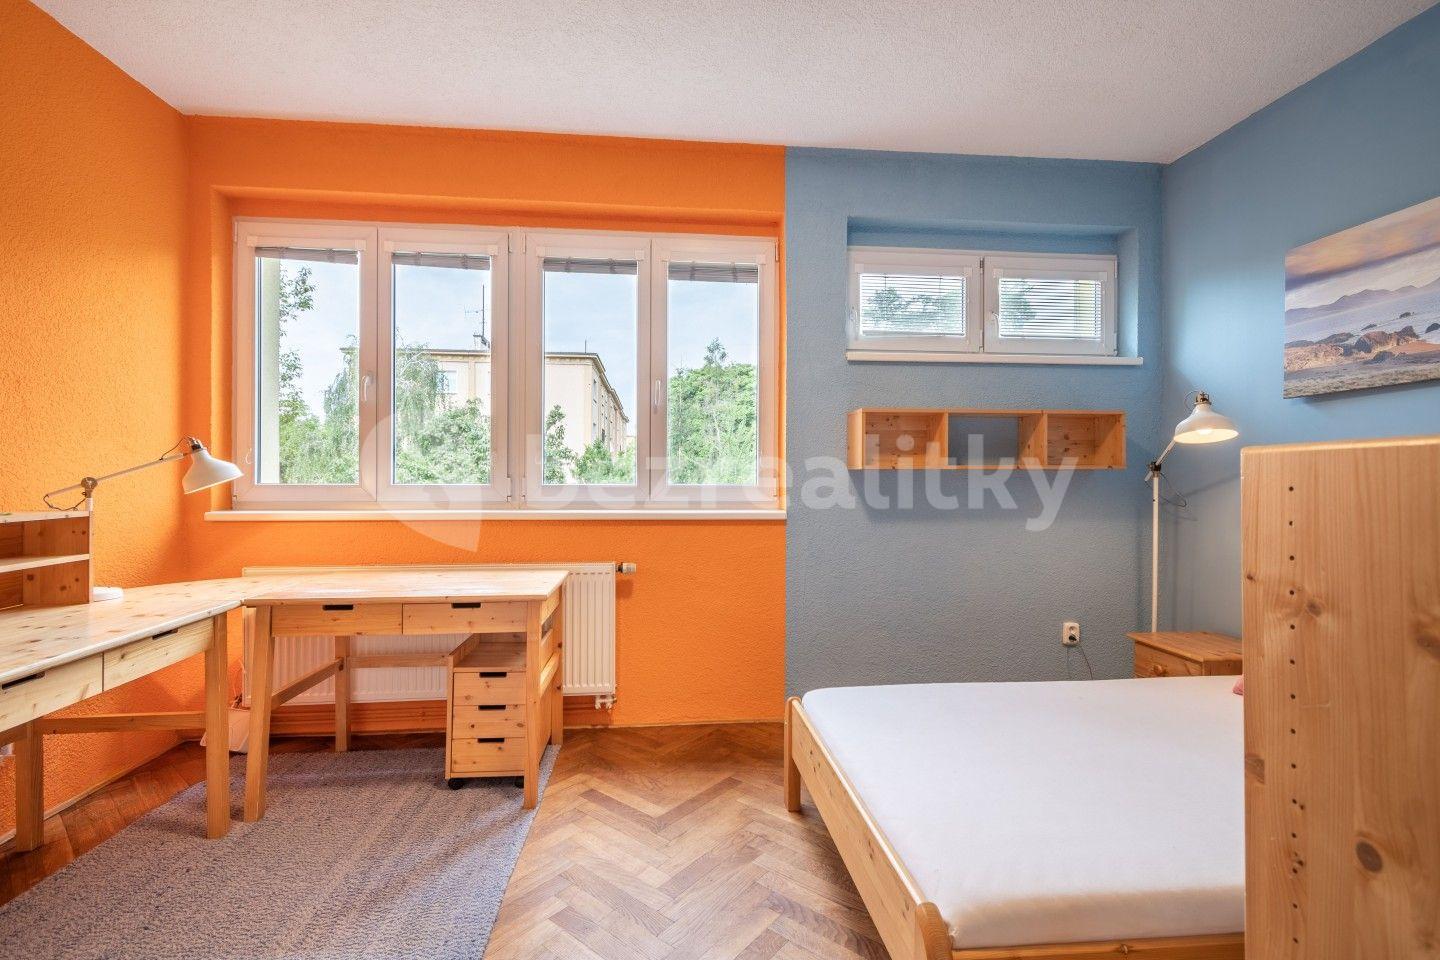 3 bedroom flat for sale, 67 m², Obětí 6. května, Prague, Prague